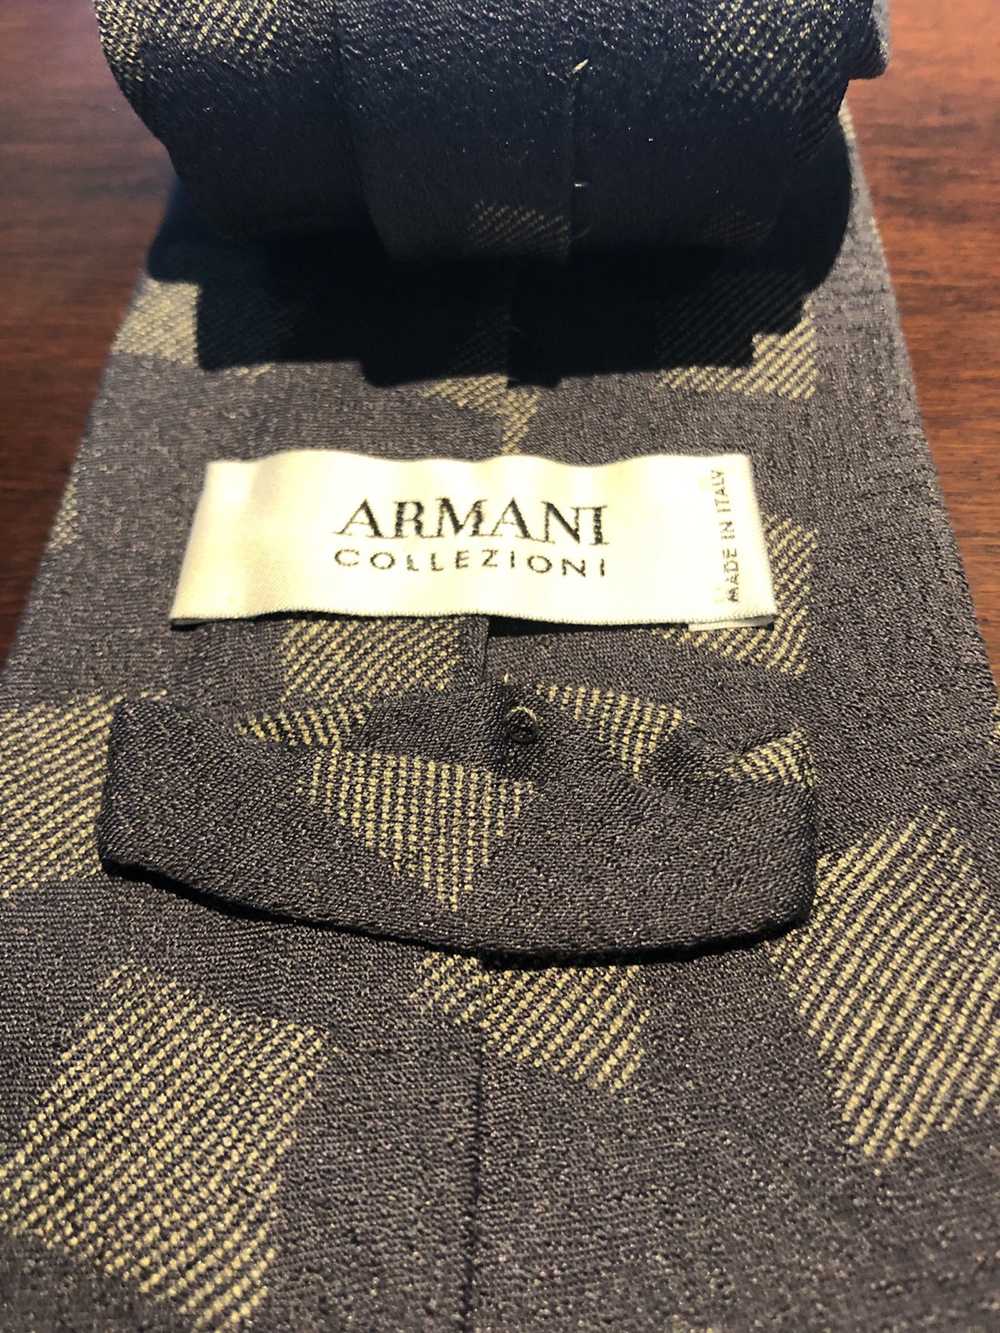 Armani 🔥 Original Armani Collezioni Tie 100% Silk - image 3